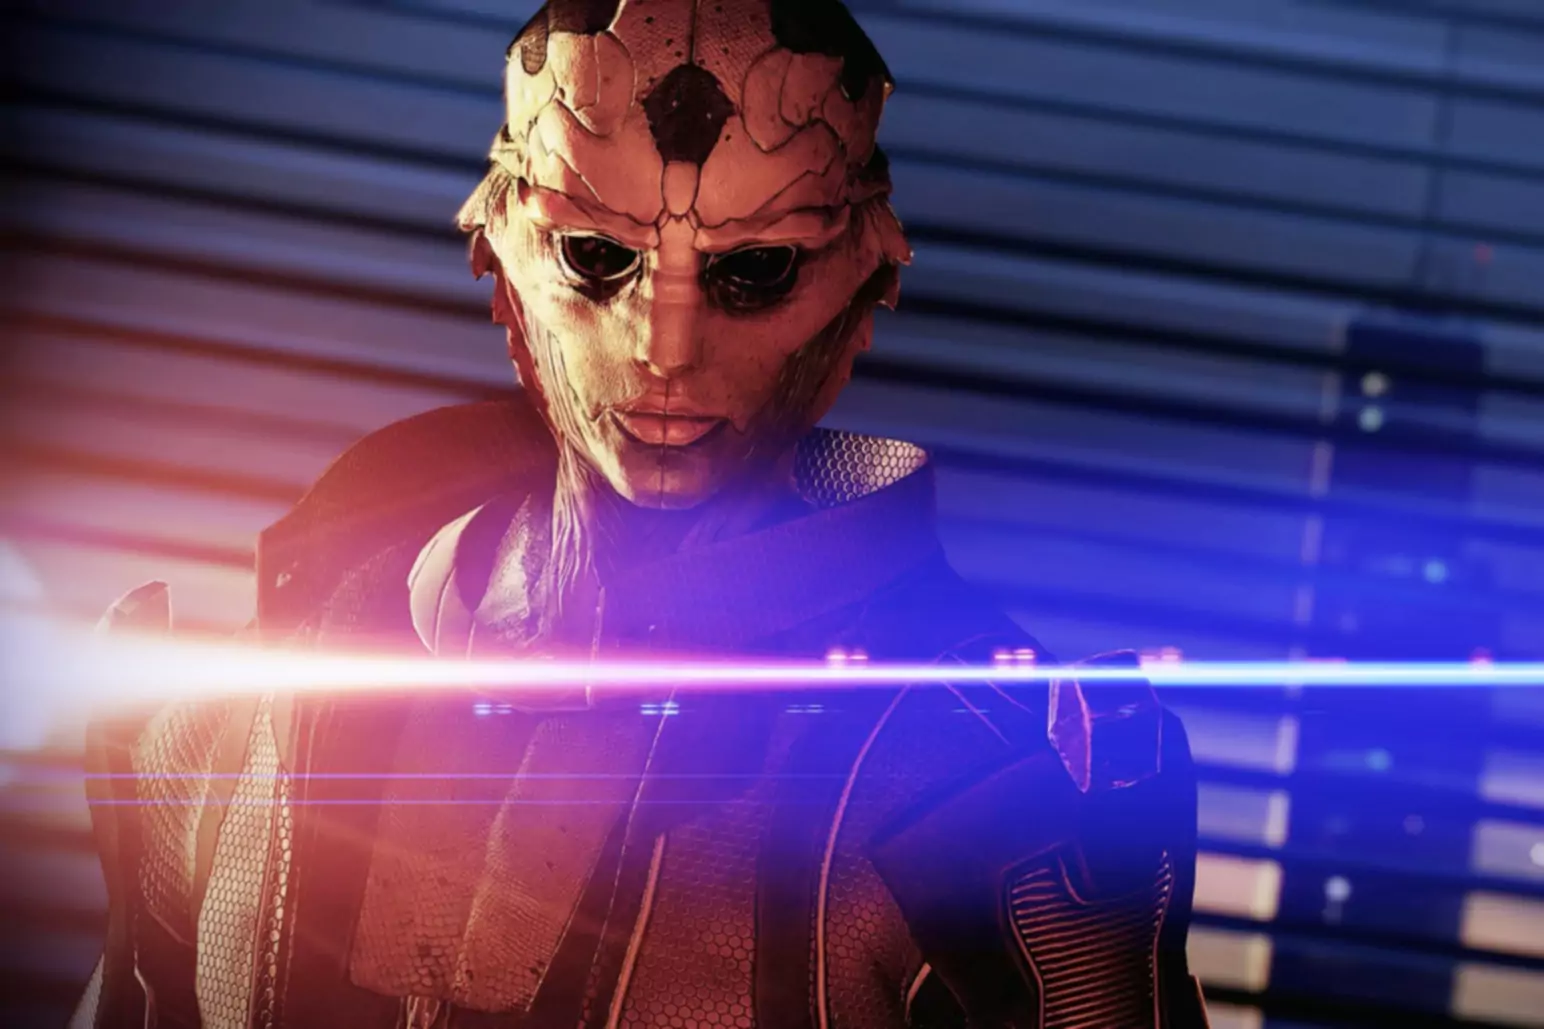 Capture d'écran du jeu Mass Effect montrant un personnage portant un masque éclairé par des lumières bleues et orange.